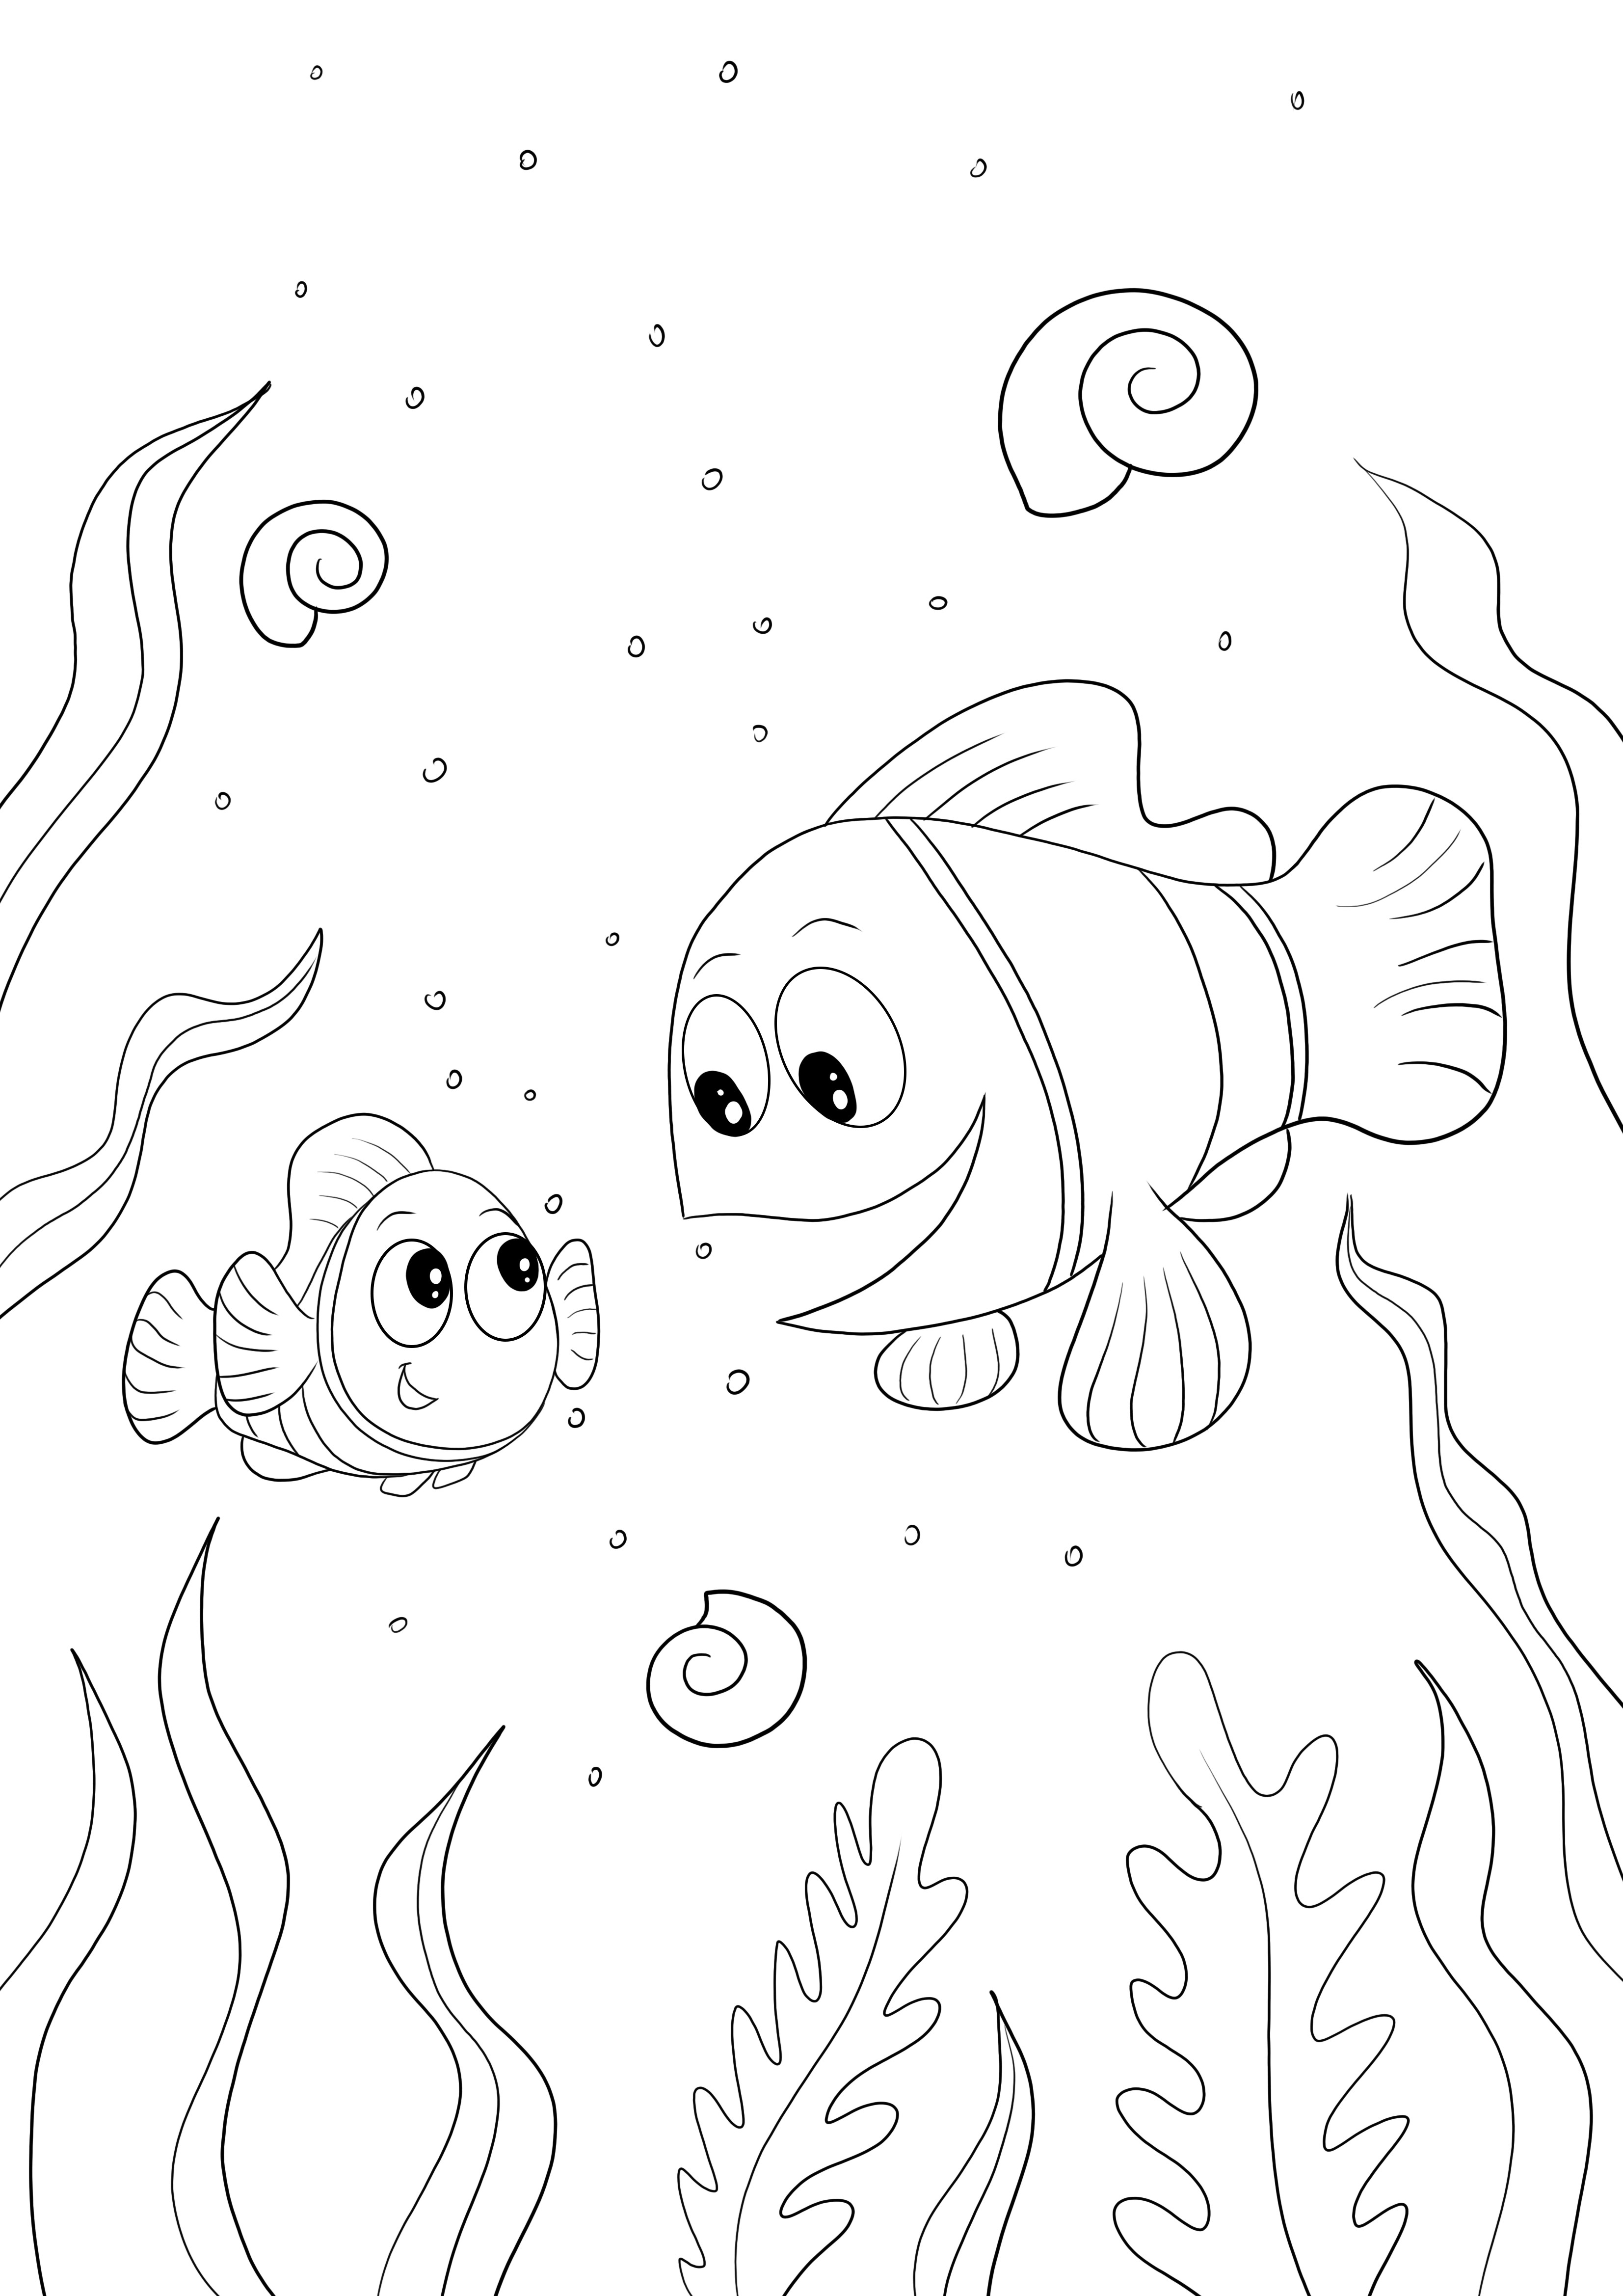 Coloração simples e fácil de Marlin, Dory, Nemo para imprimir grátis